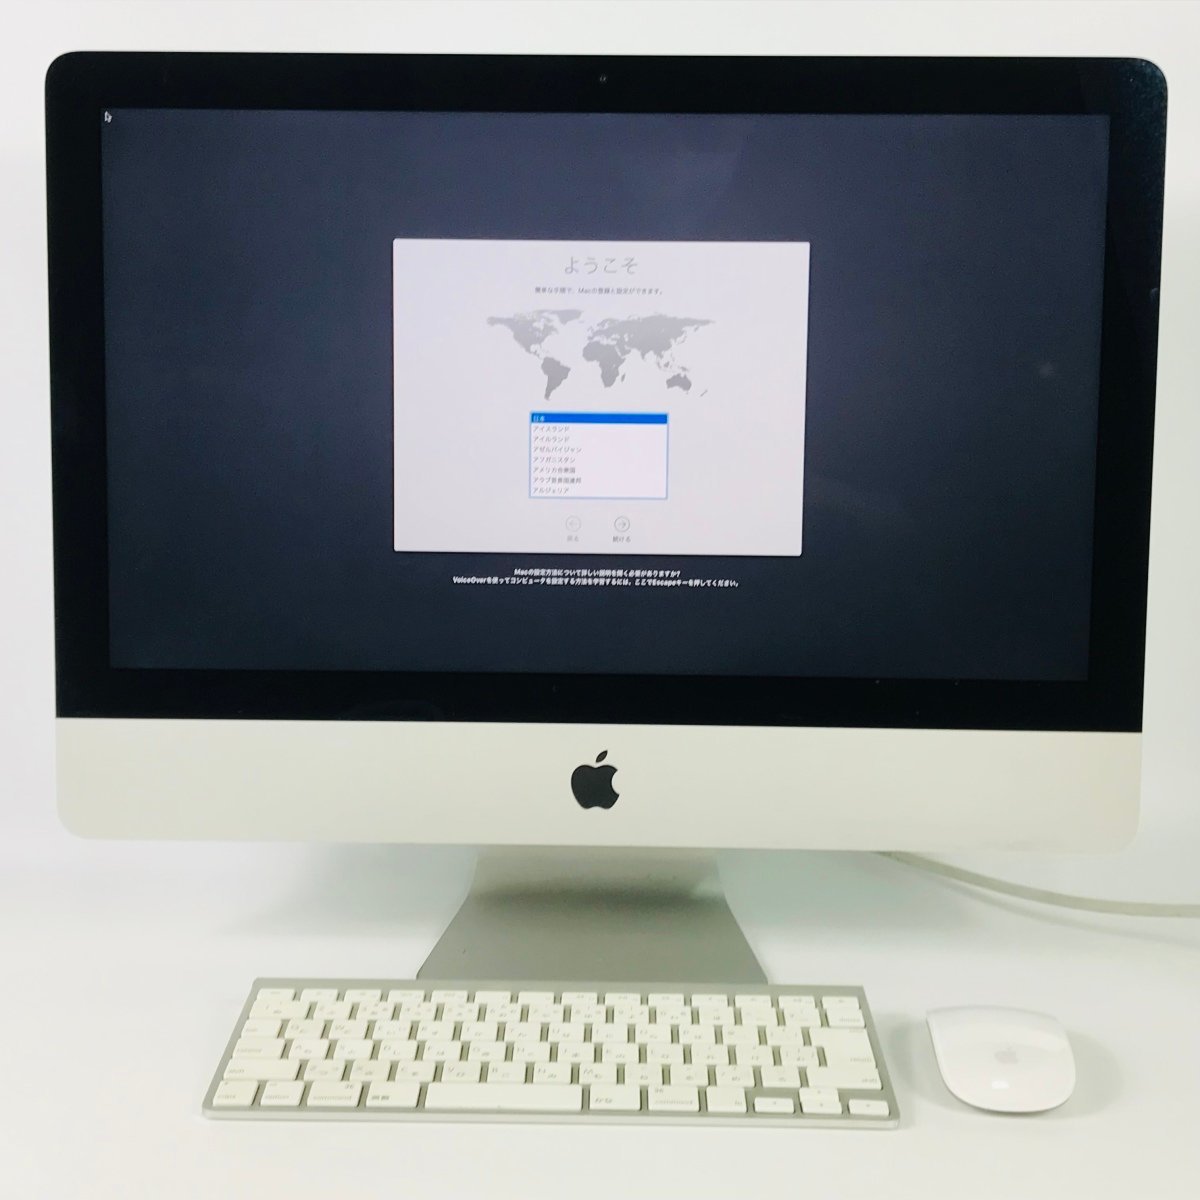 商品のインターネット Apple iMac 2013) (Late ME086J/A 21.5インチ デスクトップ型PC